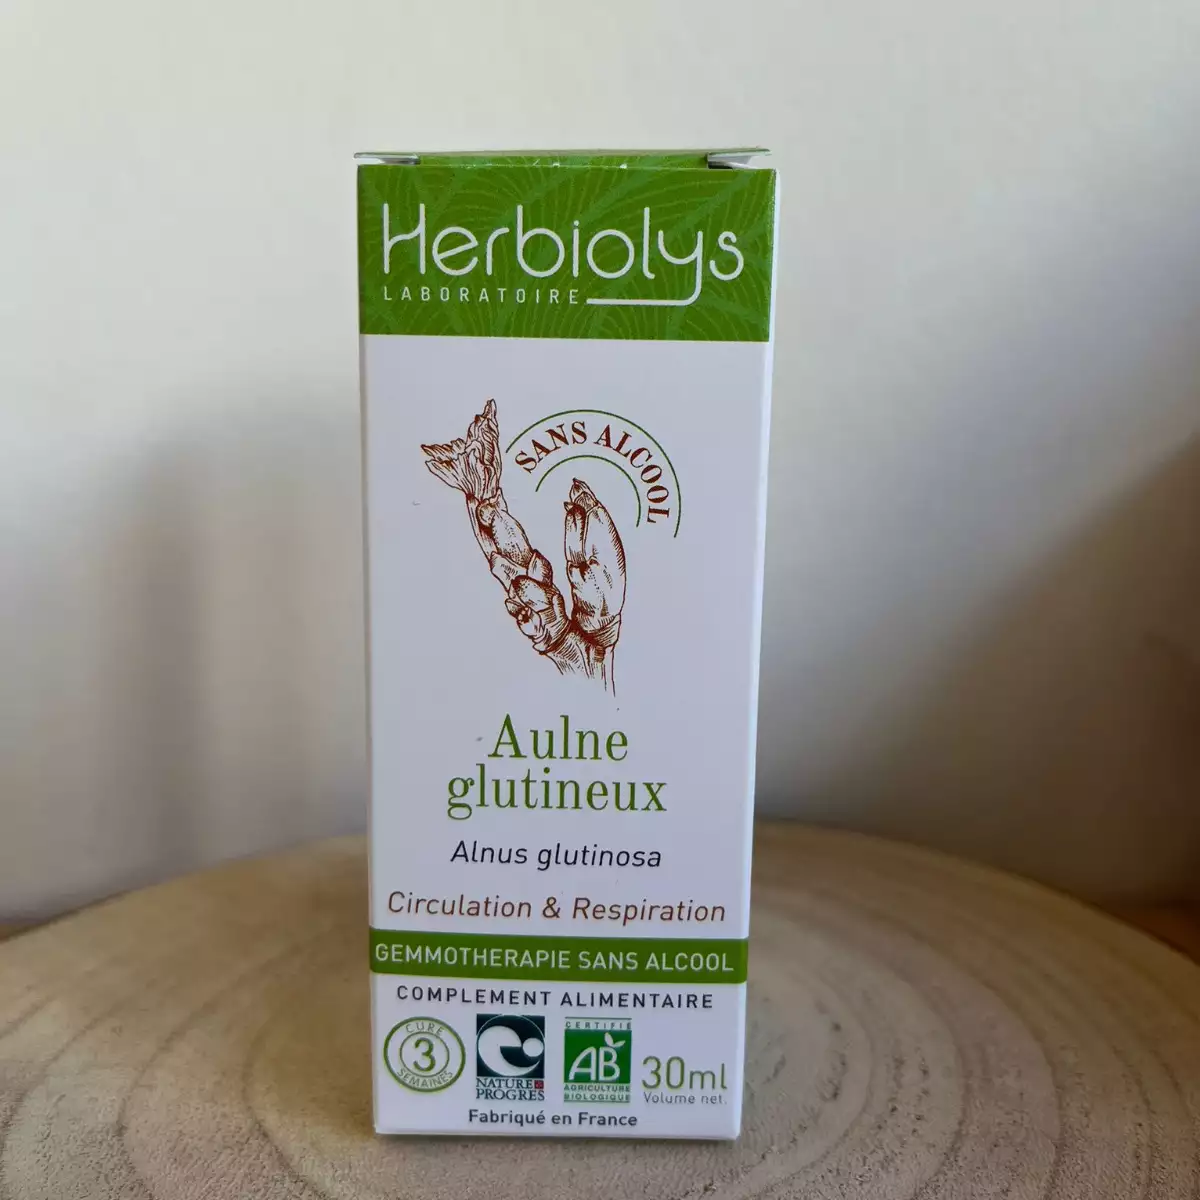 Aube glutineux - Herbiolys